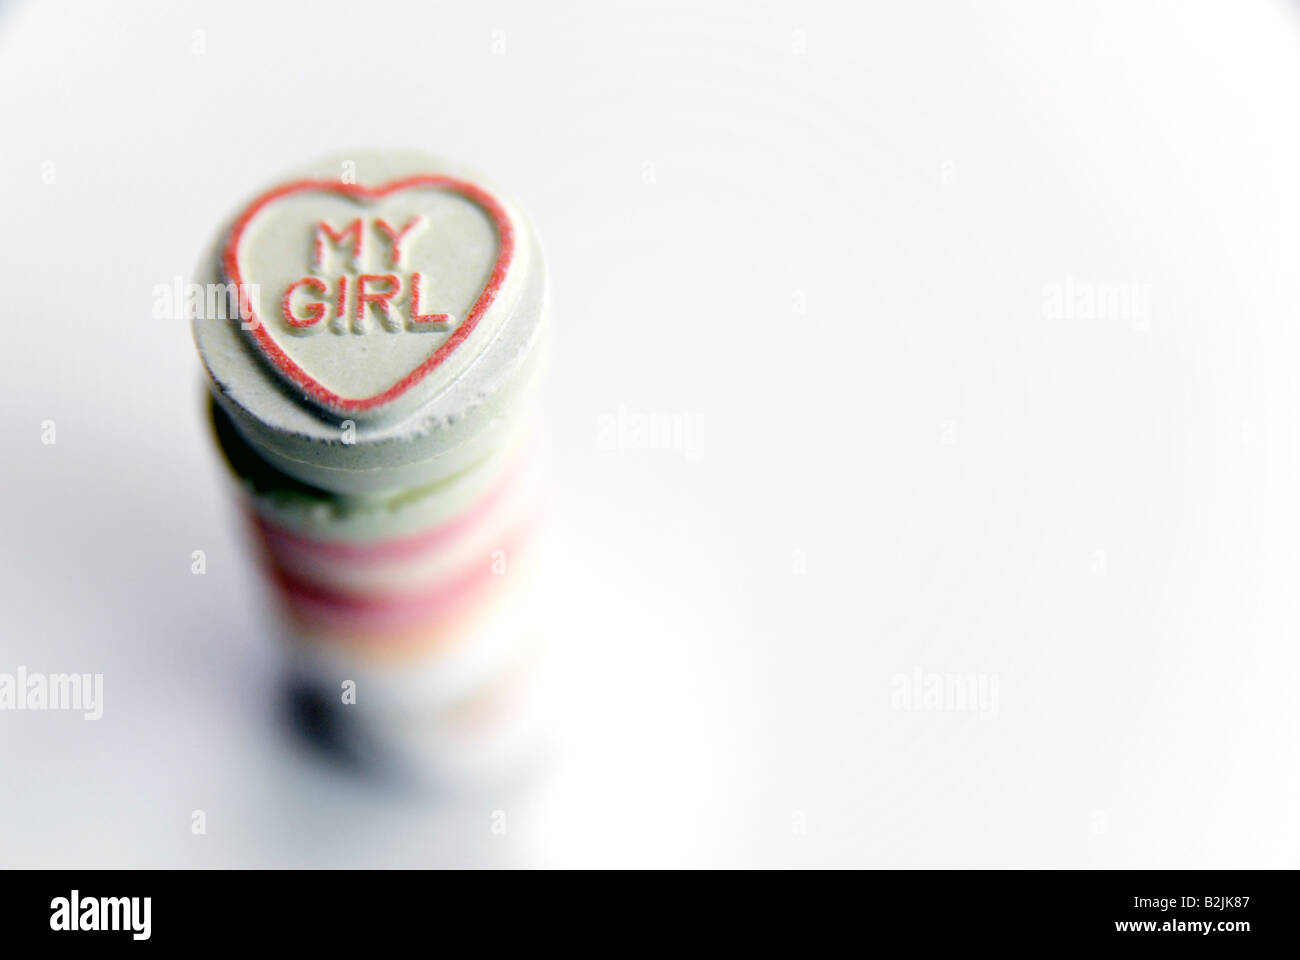 'My GIRL' intitulé sur un tas de bonbons de chaleur d'amour Banque D'Images